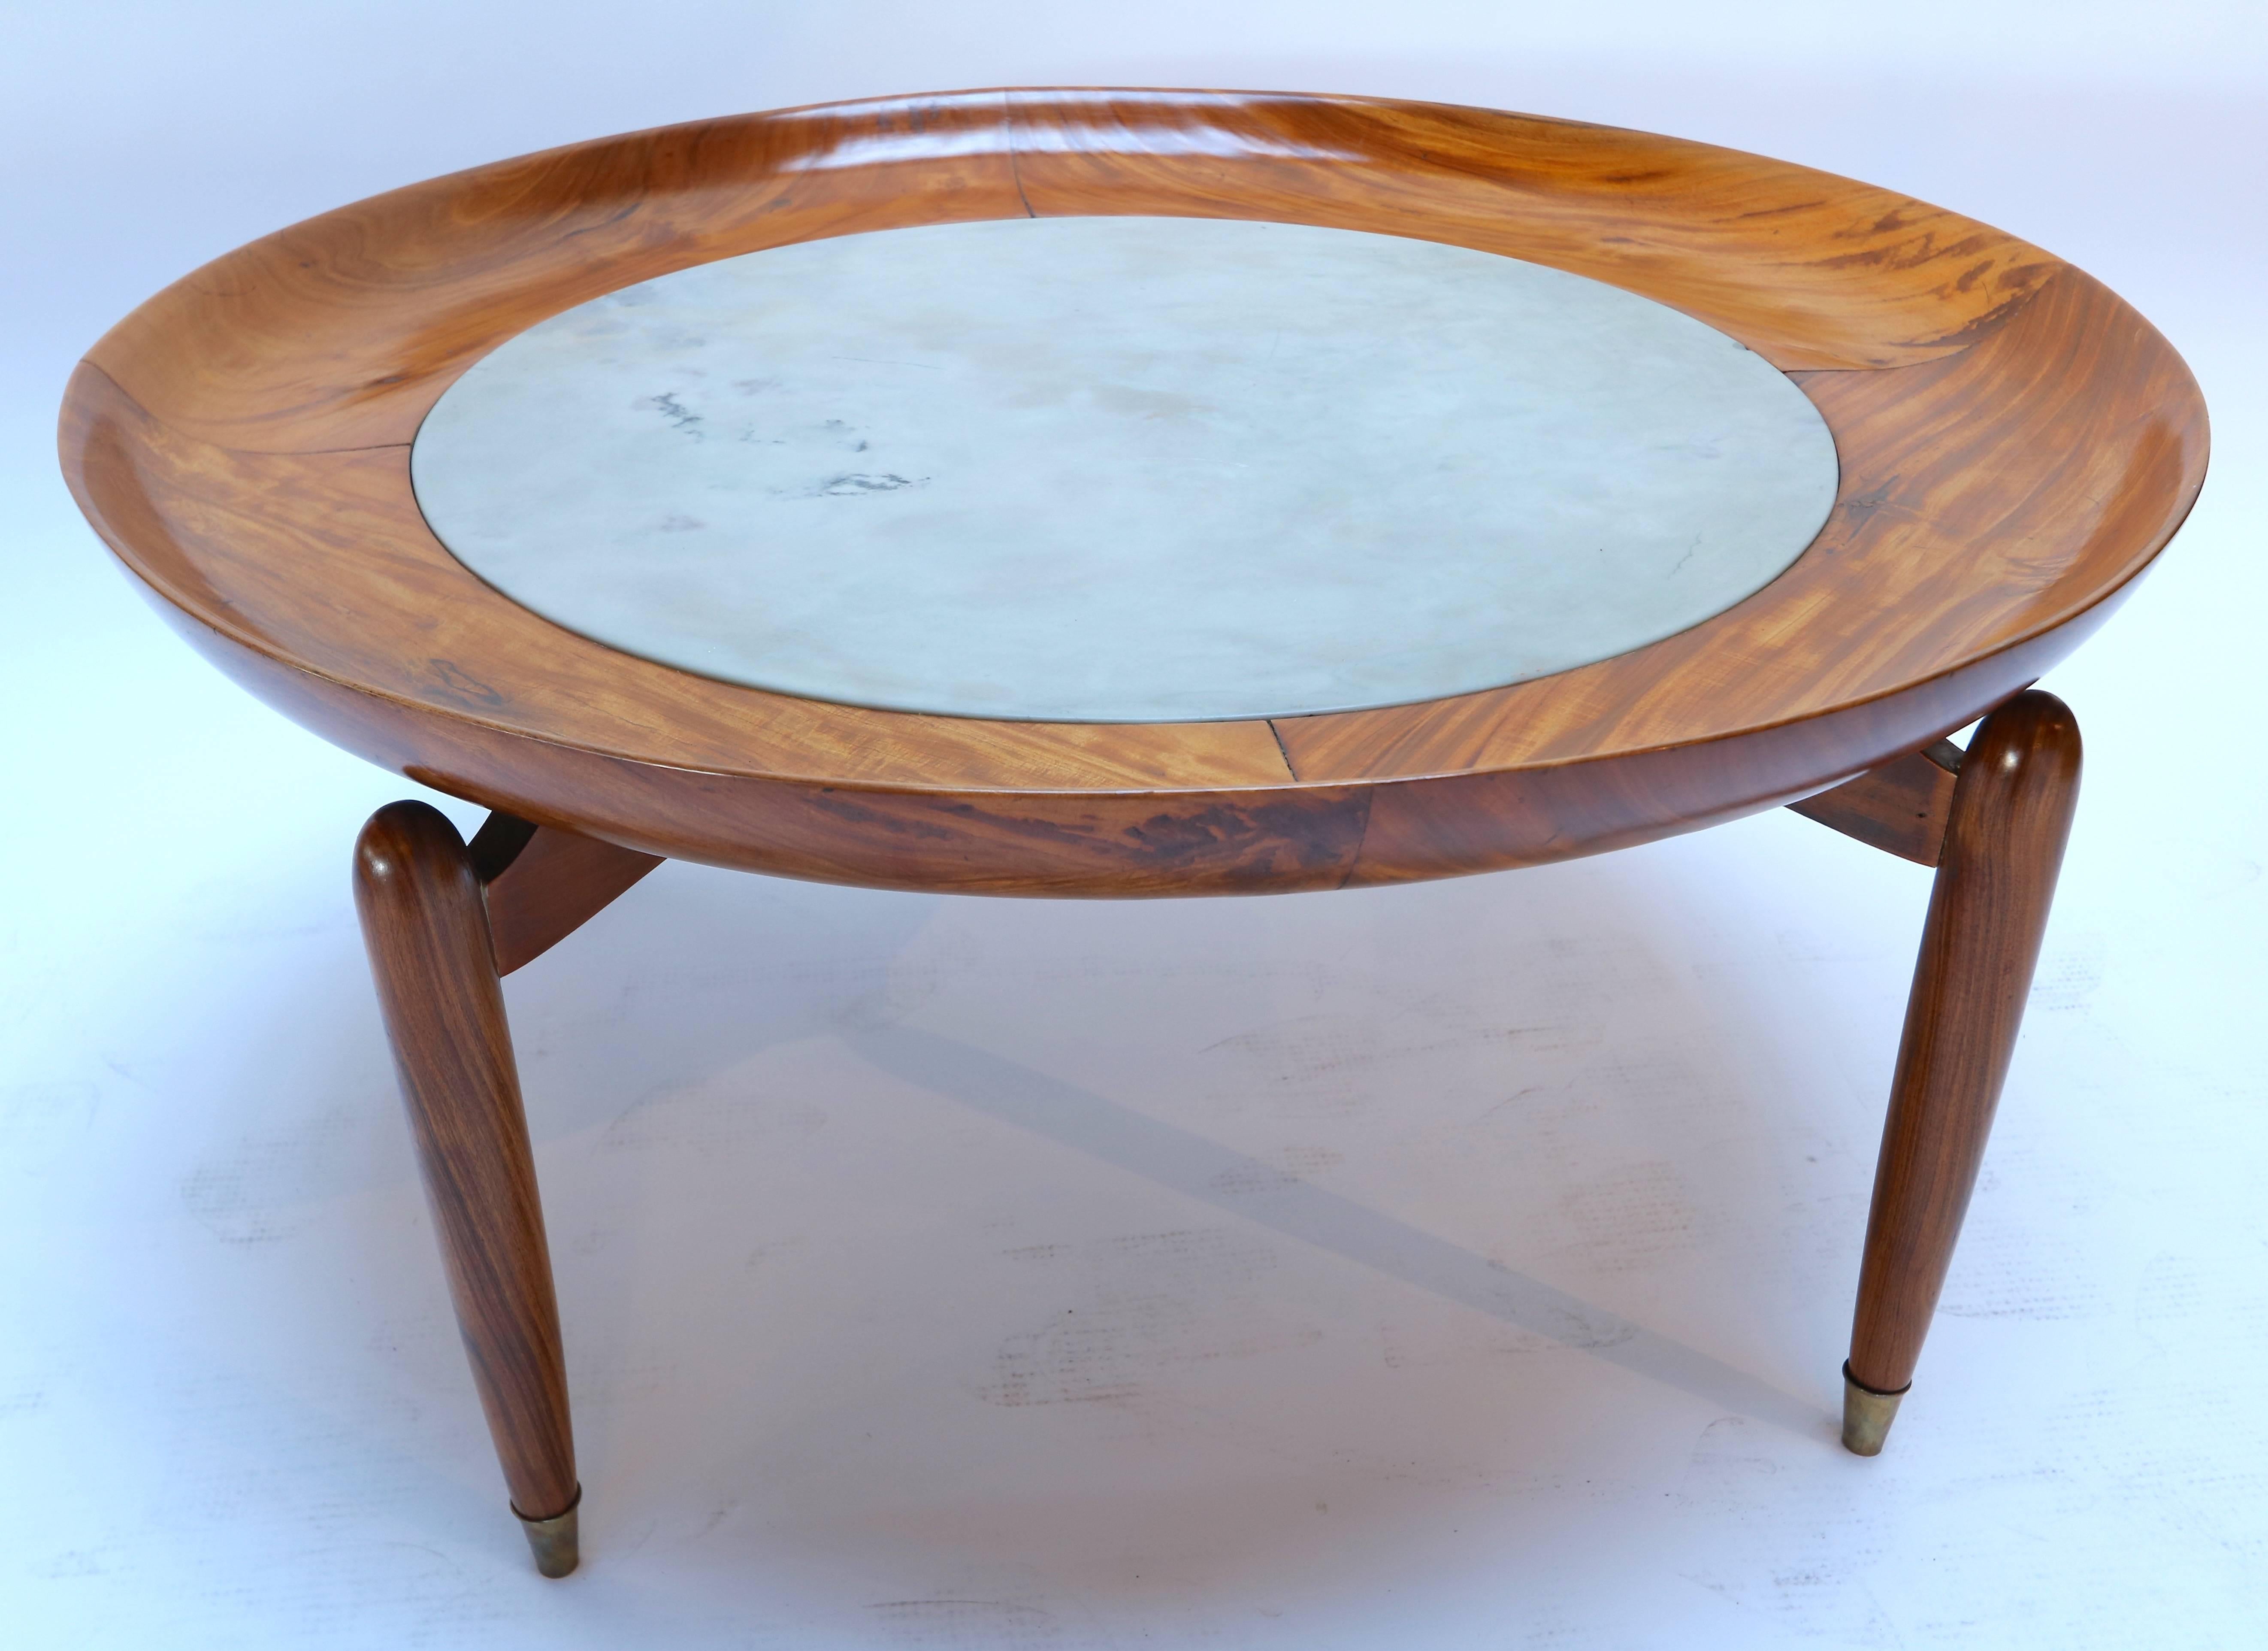 Table basse ronde en bois de caviuna brésilien des années 1960 avec un plateau en marbre par Giuseppe Scapinelli.